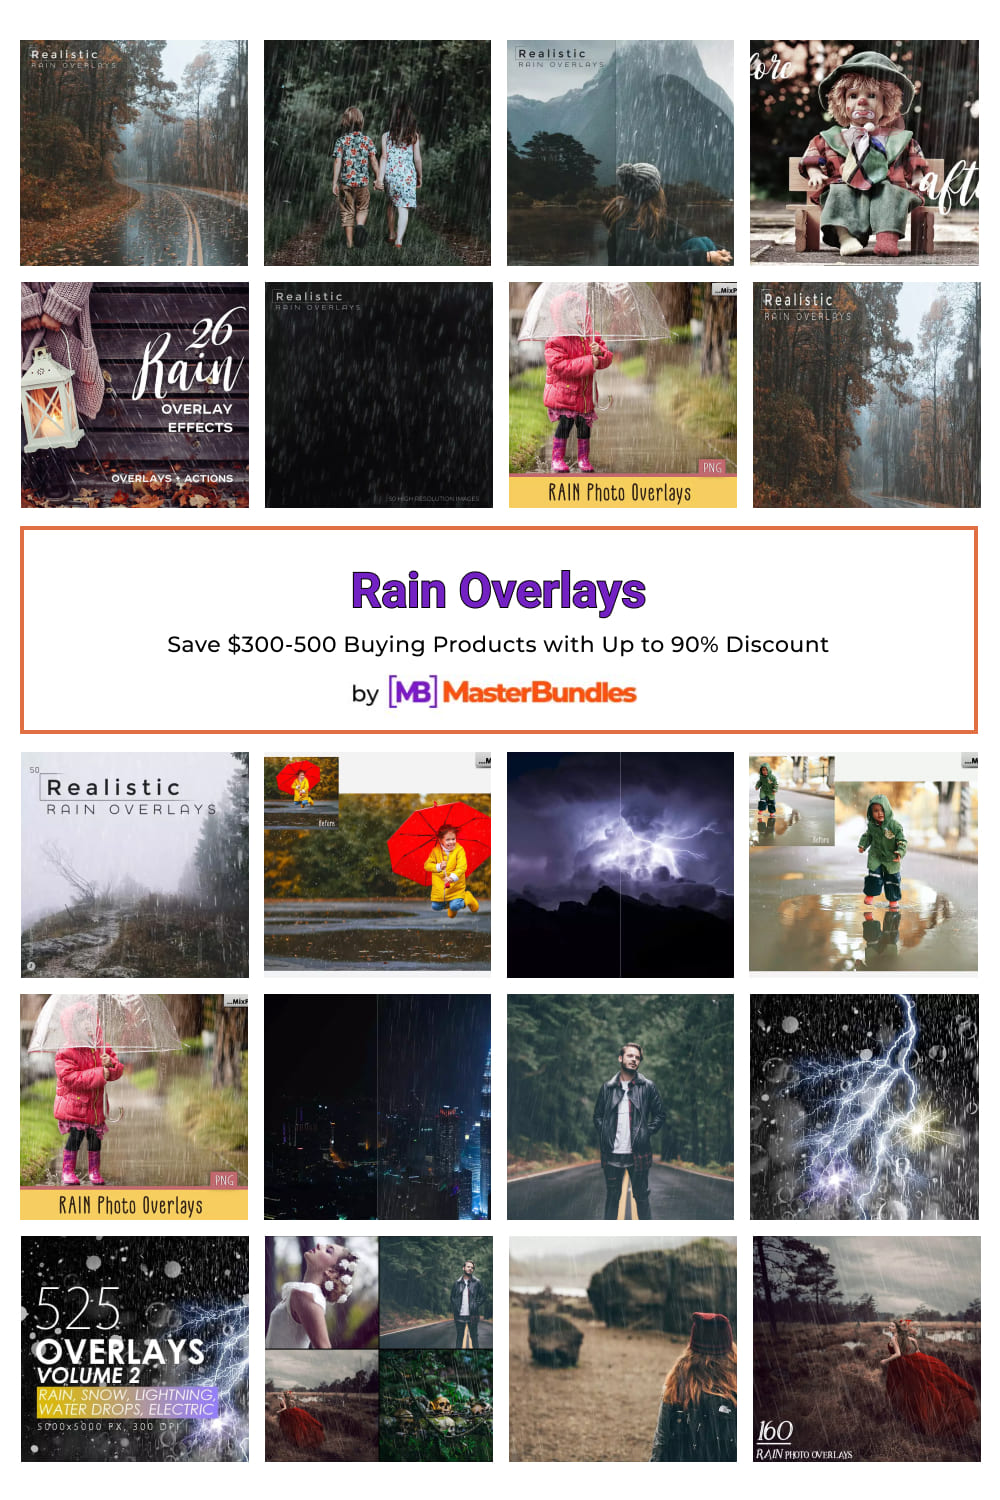 Rain Overlays Pinterest image.